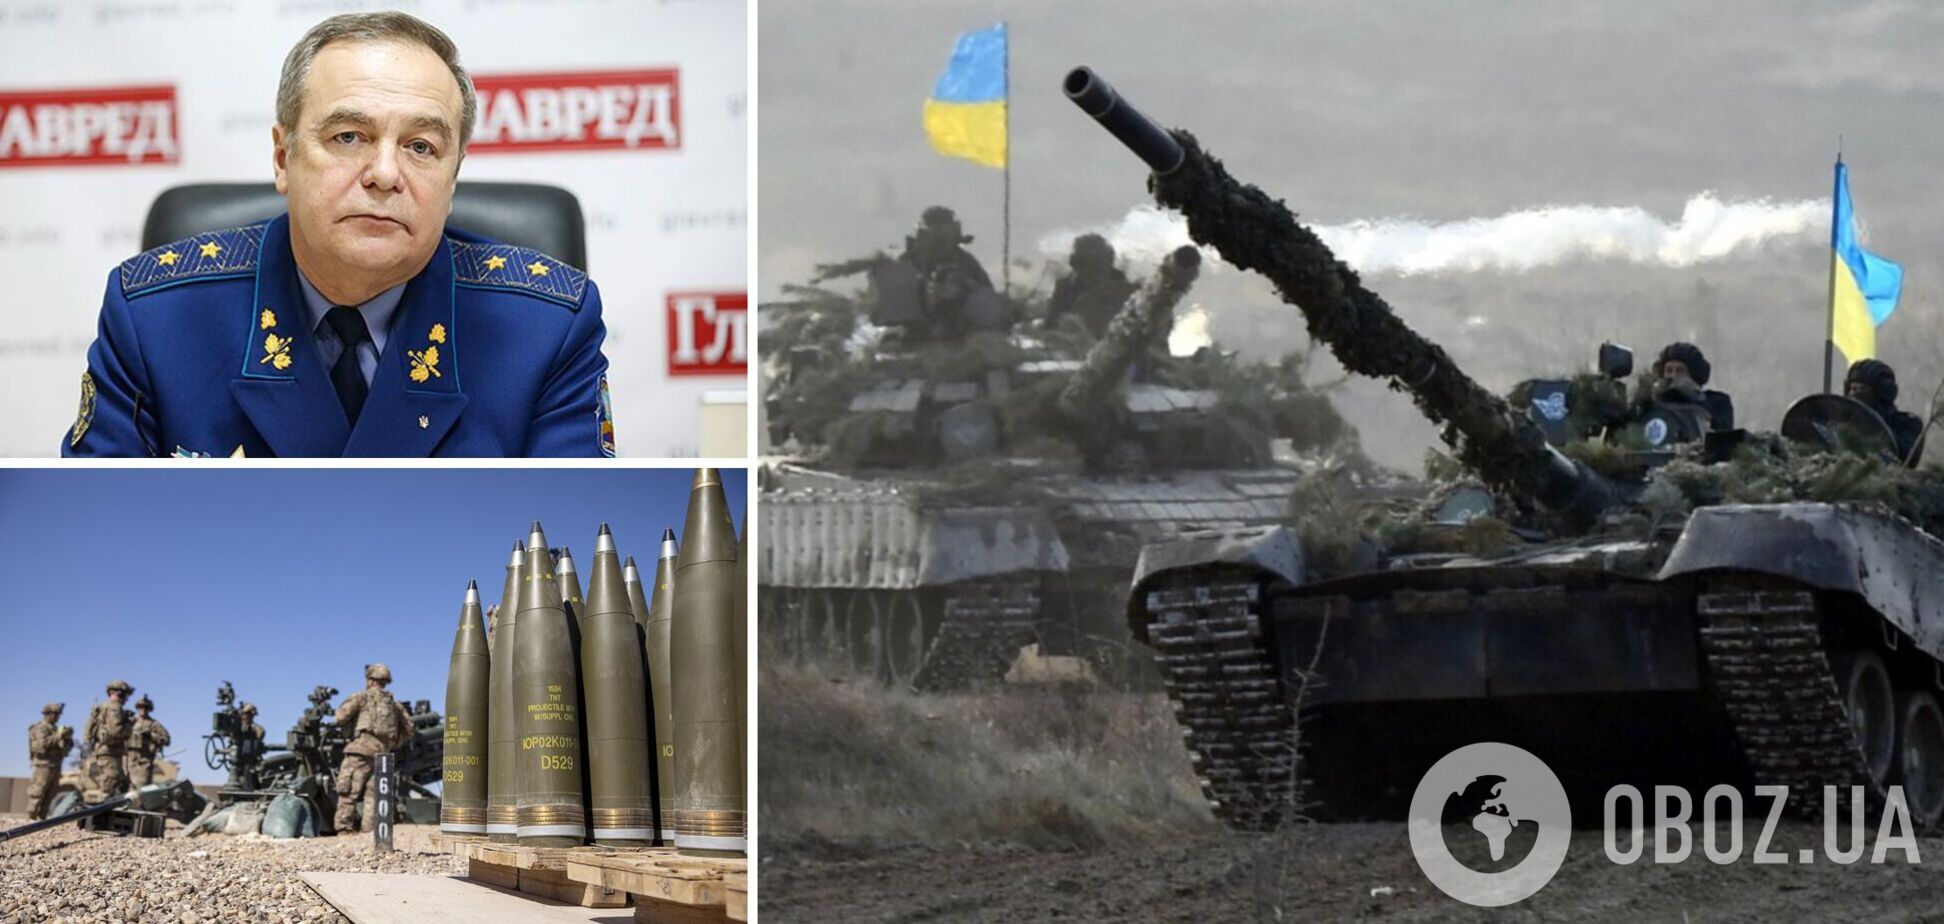 Генерал Романенко: когда закончится война? Есть важнейшее условие. Интервью